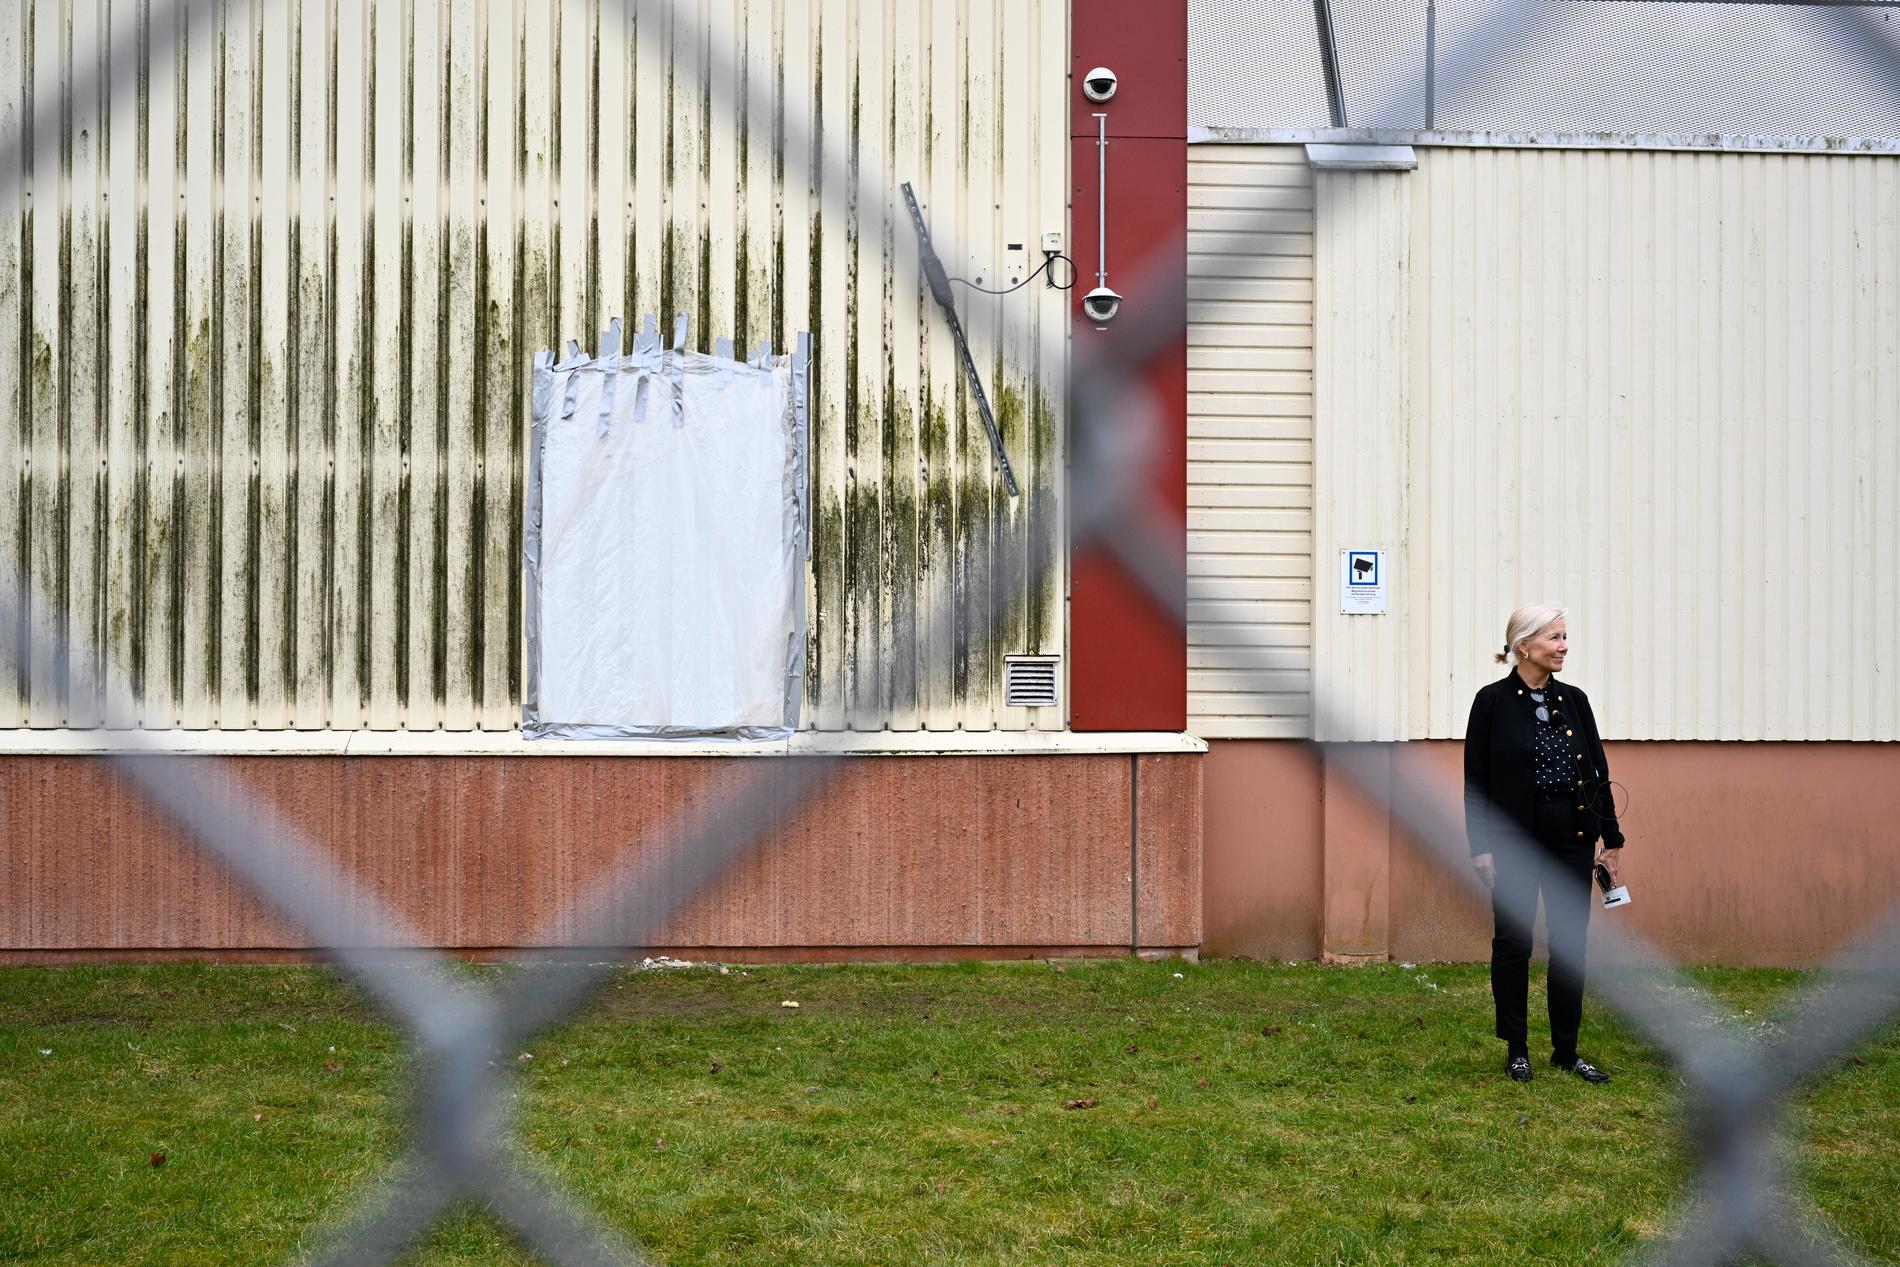 Hålet i väggen på Migrationsverkets förvar i Åstorp, som upptäcktes av väktare en morgon tidigt i mars i år. Polisen sökte förgäves efter de män som rymt, de misstänks för skadegörelse på fastigheten. 